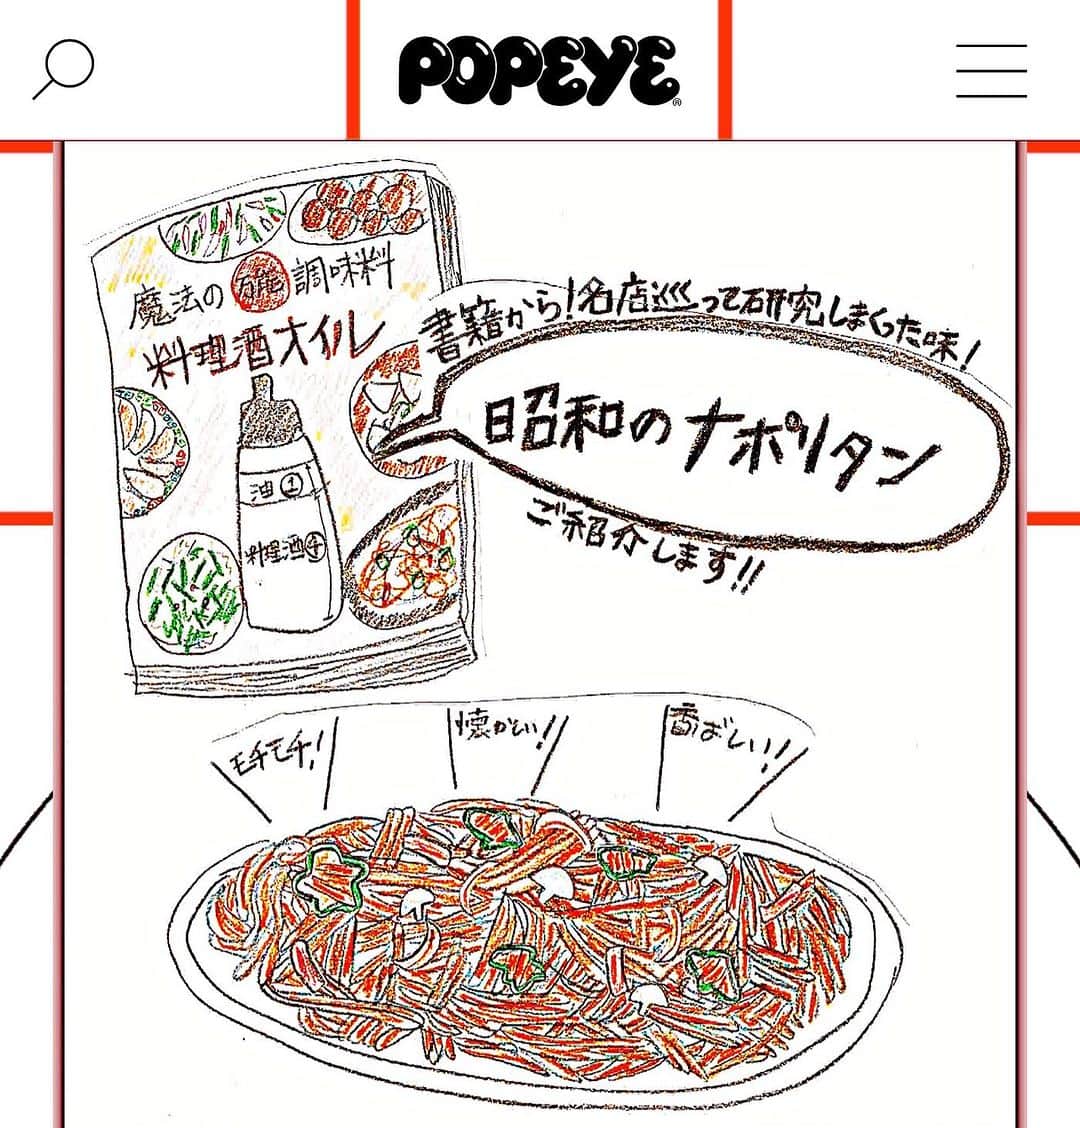 クック井上。のインスタグラム：「皆さん、ナポリタンの口になって下さい🍝  ☞☞☞swipe☞☞☞  マガジンハウス【POPEYE(ポパイ)】 『useful spaghdtti recipe』 【ゲスト：クック井上。／昭和のナポリタン】 https://popeyemagazine.jp/post-175867/  レシピをご紹介してます！ 手書きの絵なんて何年振りに描いたんやろか？？？ 我ながらうんまいナポリタンですよ😋  #ナポリタン #ポパイ #POPEYE #ロメスパ #instafood #delicious #cooking #pasta #洋食 #喫茶店 #おうちごはん #おうちカフェ #ケチャップ #cafe #昭和グルメ #昭和レトロ #飯テロ #レシピ #パスタ #スパゲッティ #グルメ #料理酒オイル #料理男子 #野菜ソムリエ #アスリートフードマイスター #フードコーディネーター #食育インストラクター #こども成育インストラクター #料理芸人 #クック井上。」